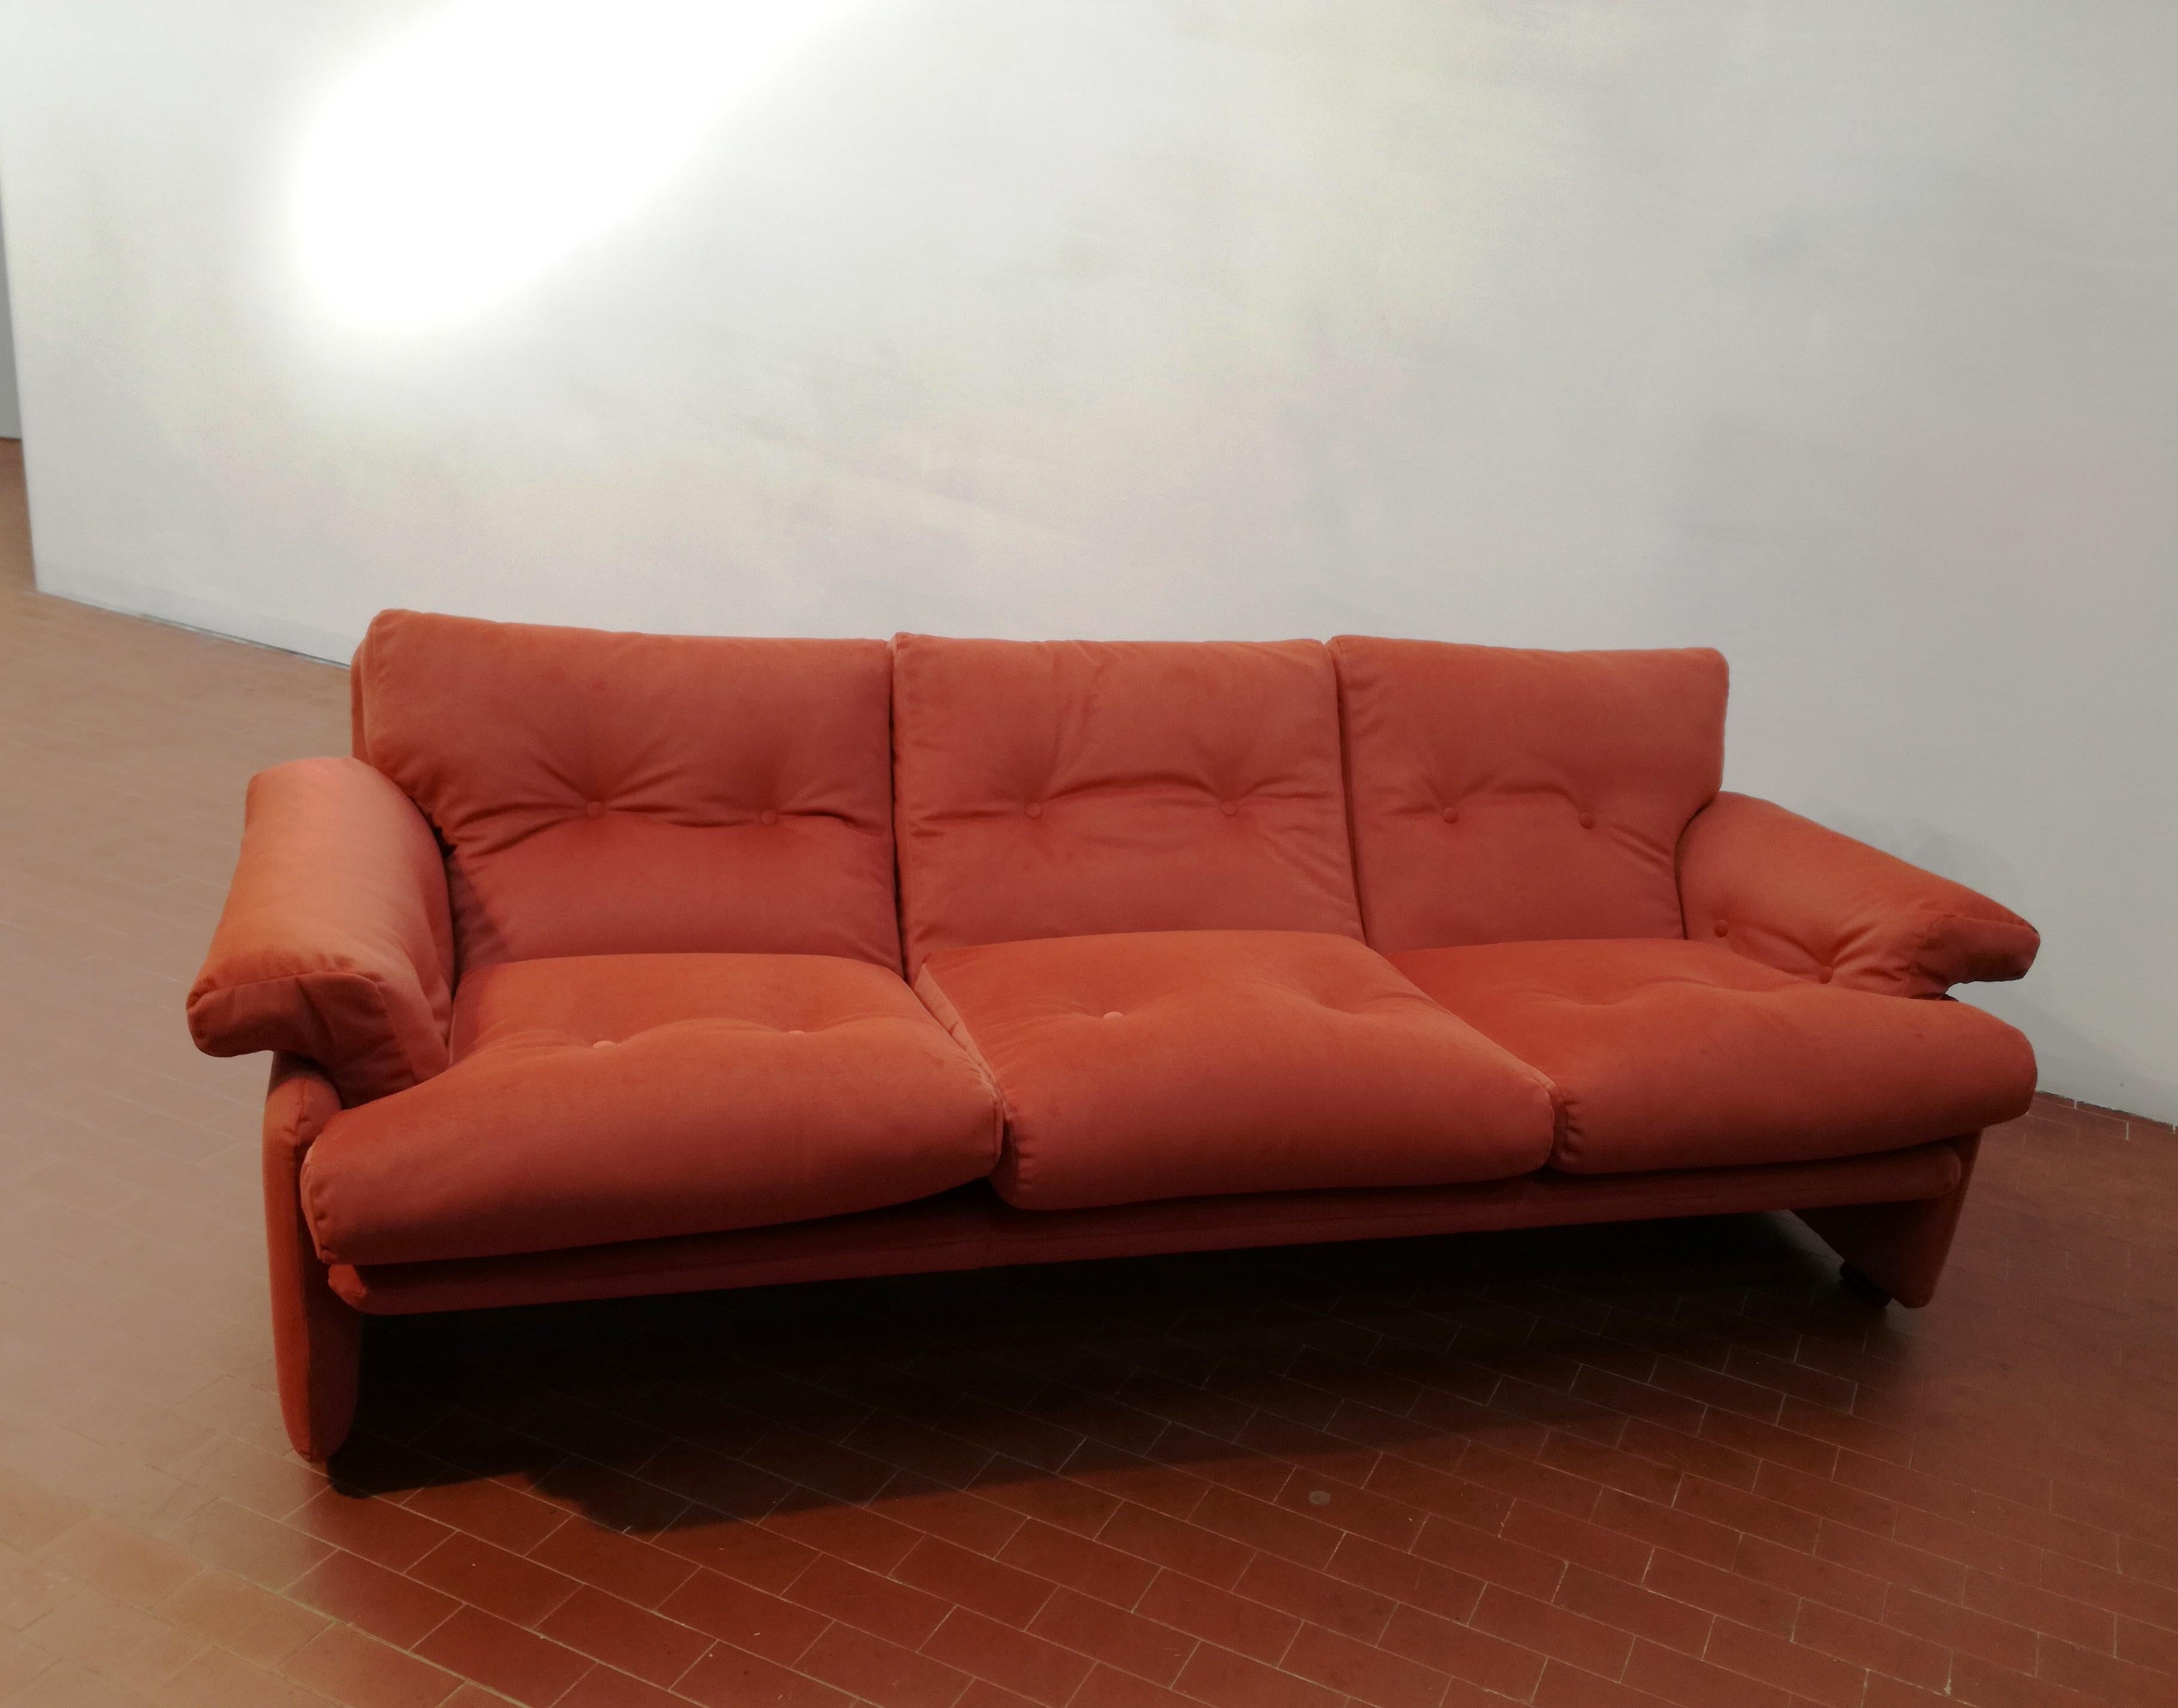 Divano 3 posti B&B Italia, disegno di Afra e Tobia Scarpa anni 60. il divano e' stato rifatto nell'imbottitura dei cuscini e braccioli e rivestito a nuovo. il tessuto e' un vellutino colore mattone/arancio. con trattamento antimacchia